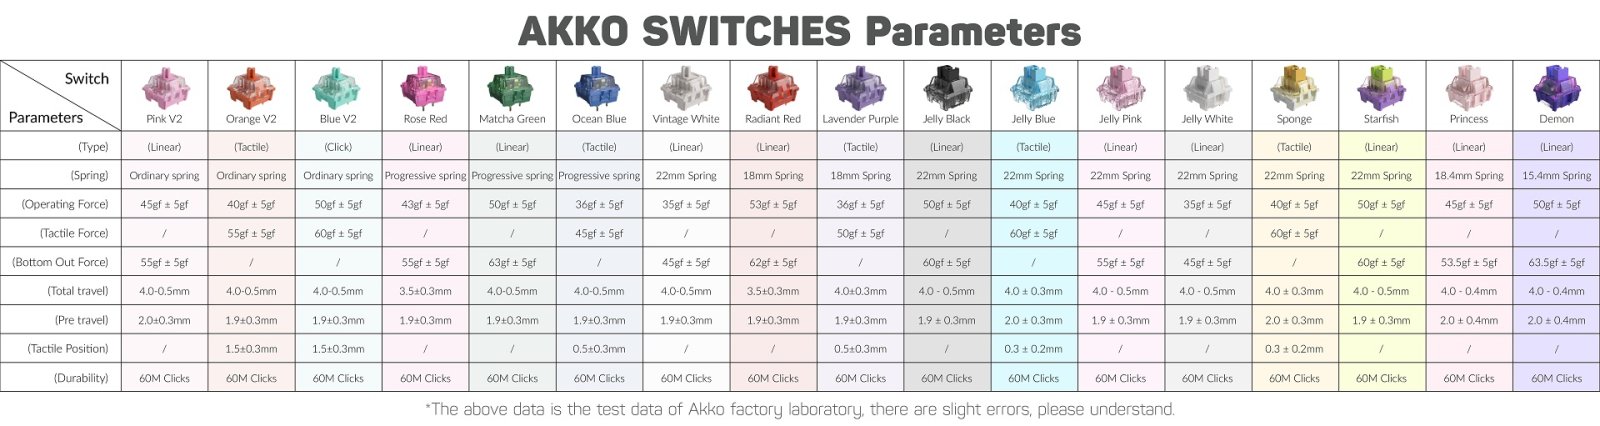 Akko switches.jpg